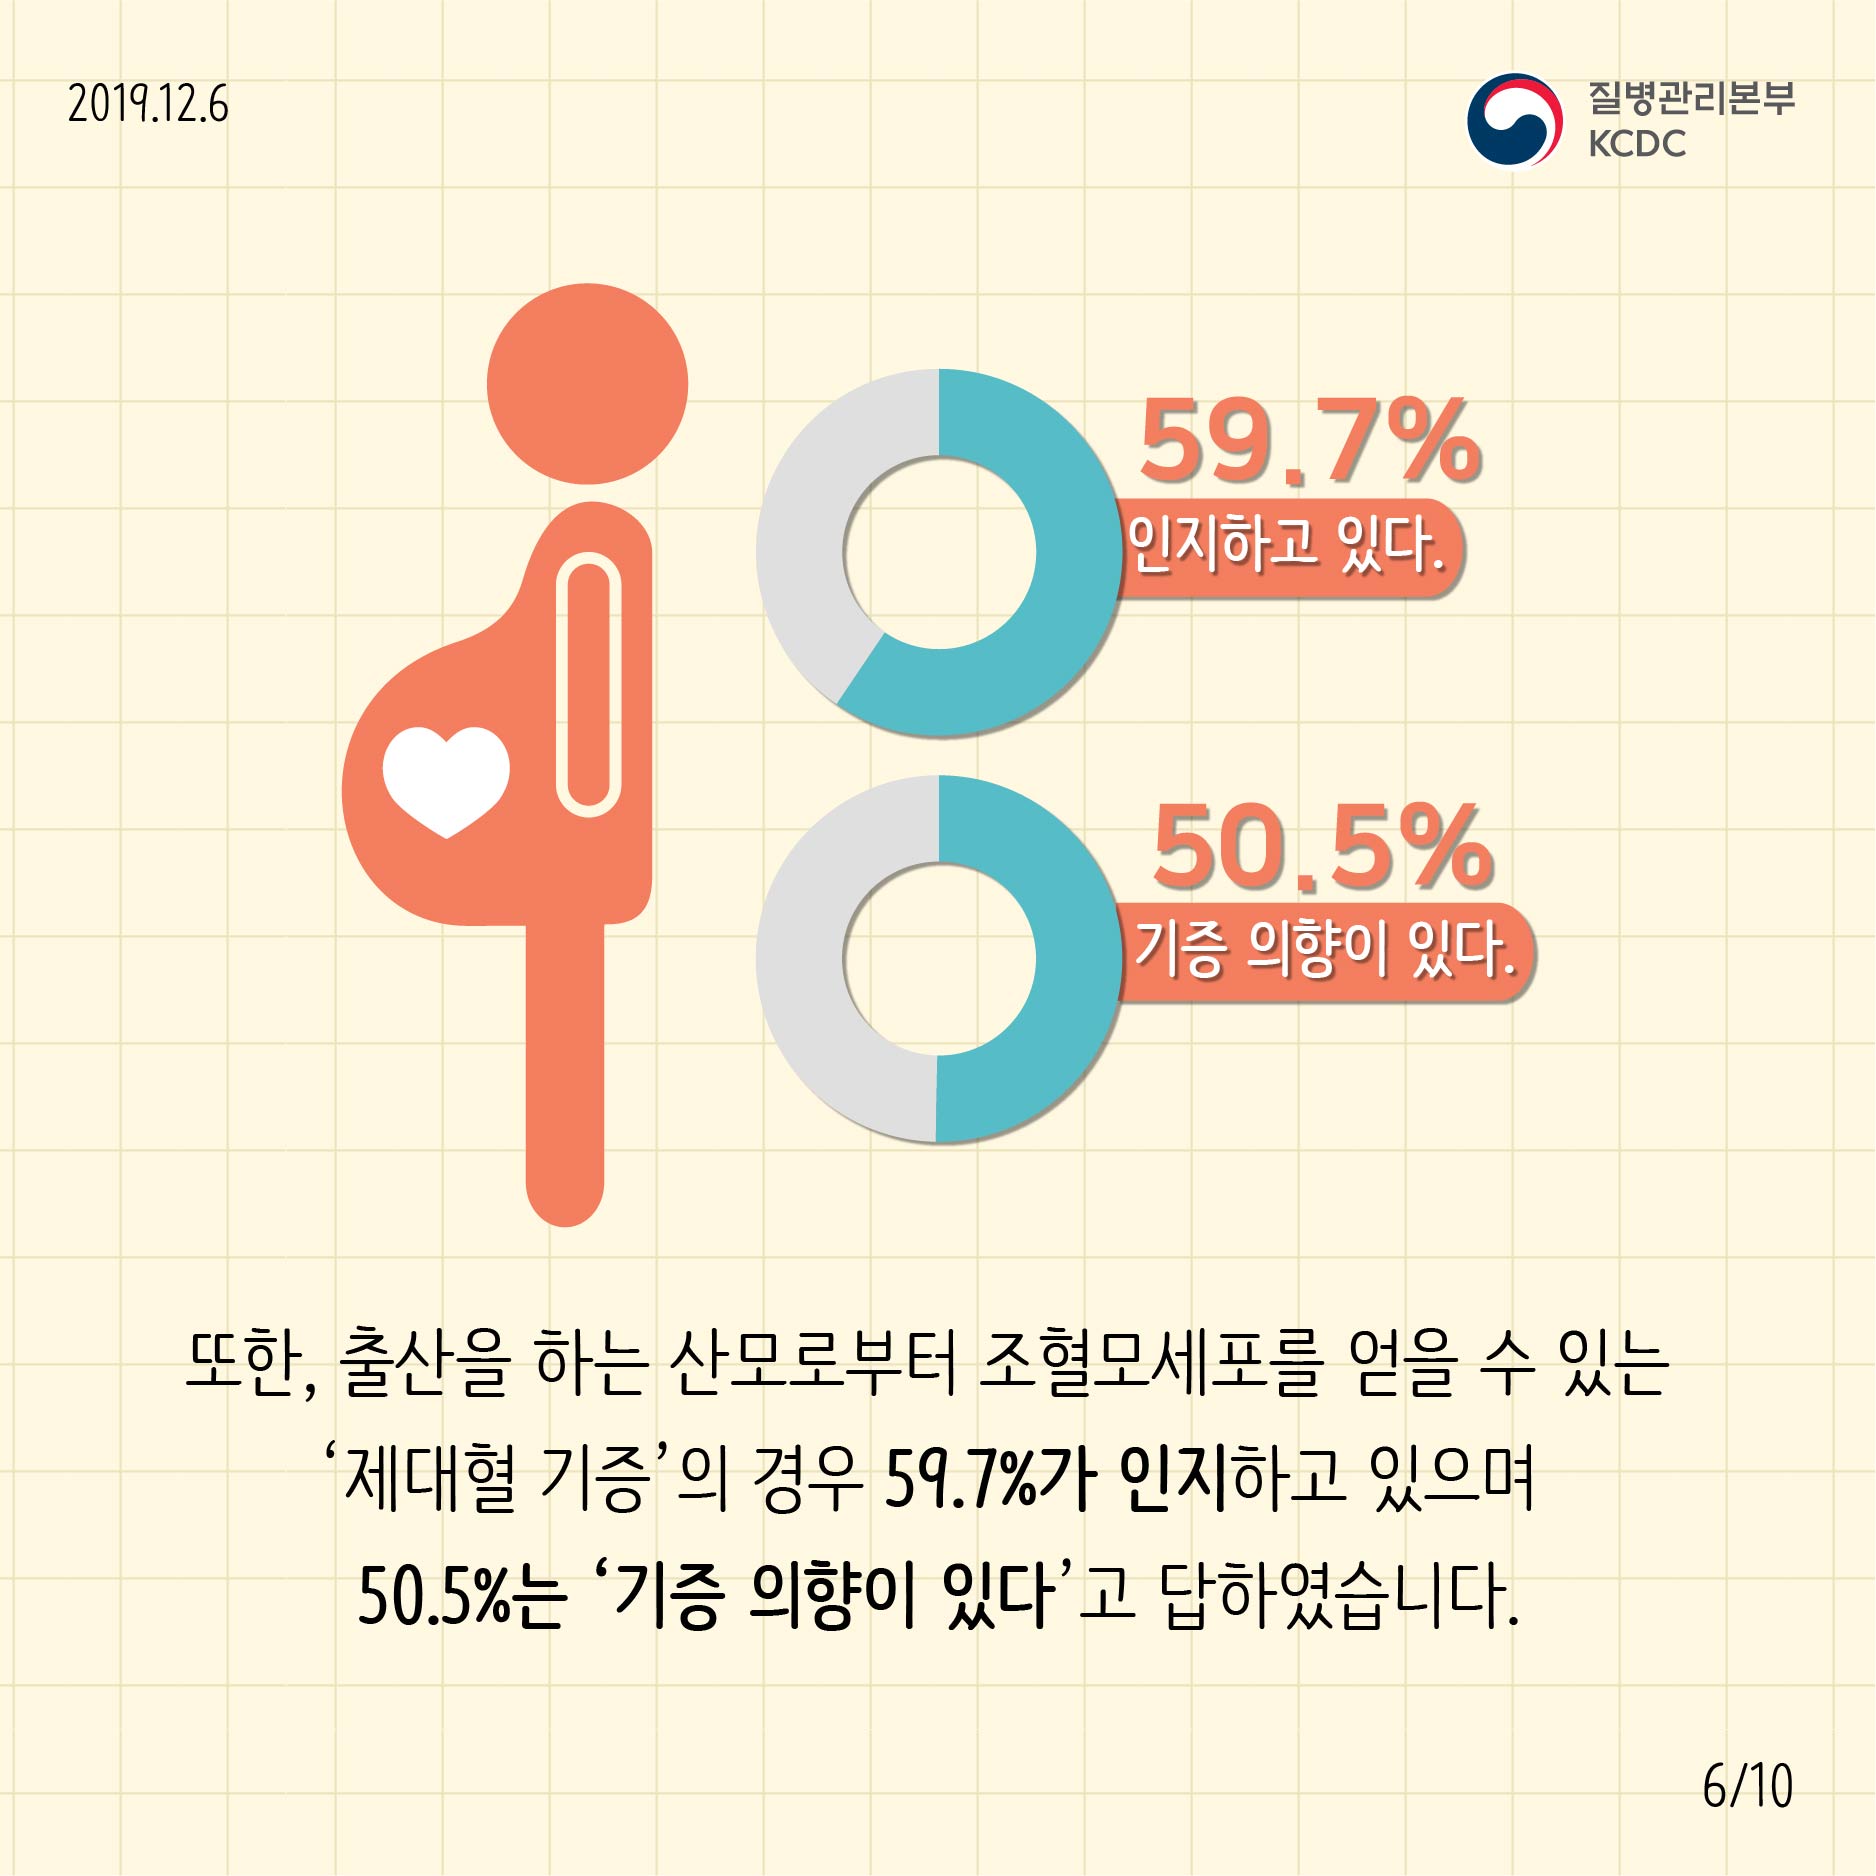 또한, 출산을 하는 산모로부터 조혈모세포를 얻을 수 있는 '제대혈 기증'의 경우 59.7%가 인지하고 있으며 50.5%는 '기증의향이 있다'고 답하였습니다.